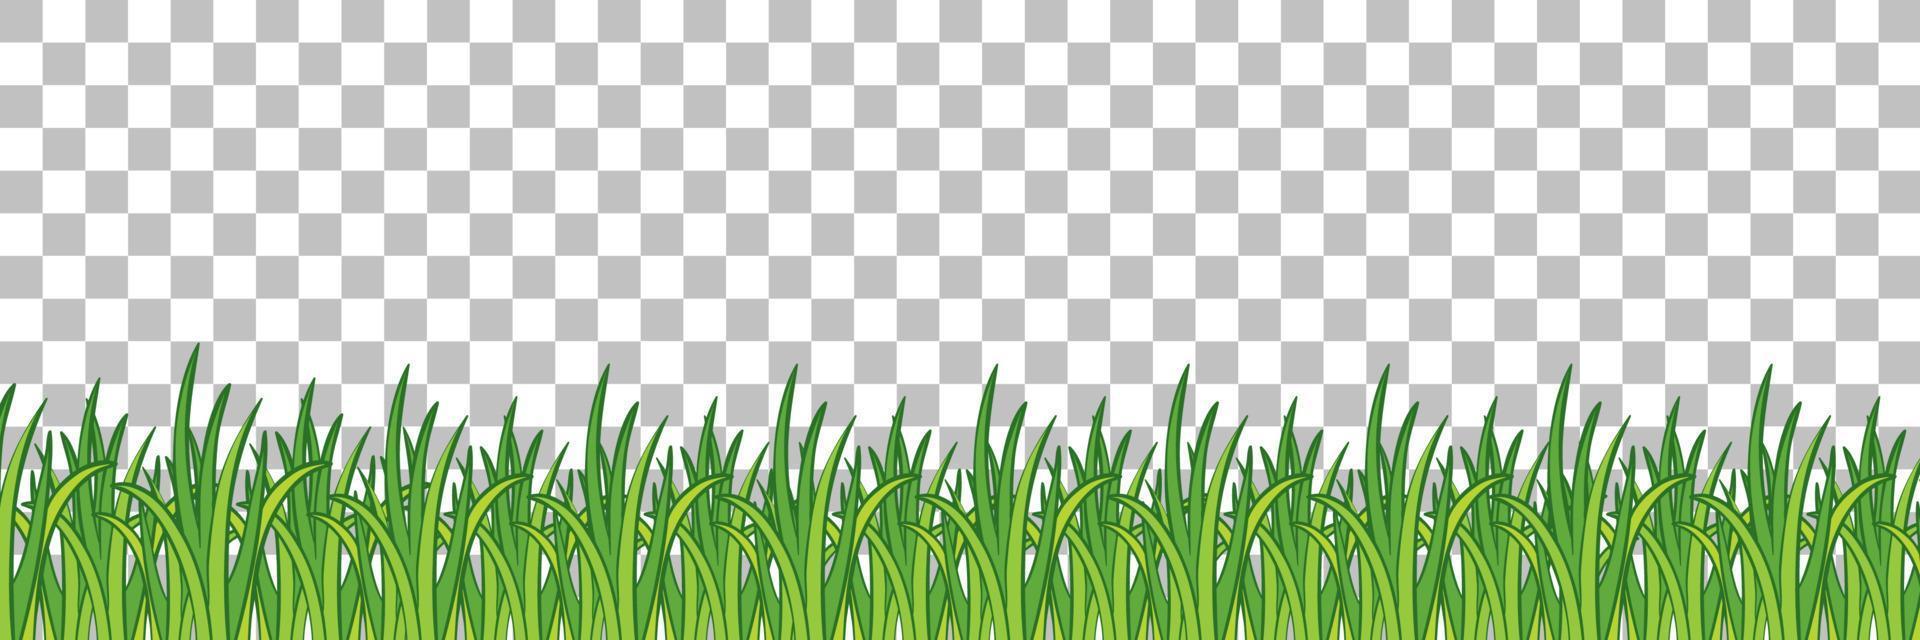 gräs och växter på rutnätbakgrund för inredning vektor